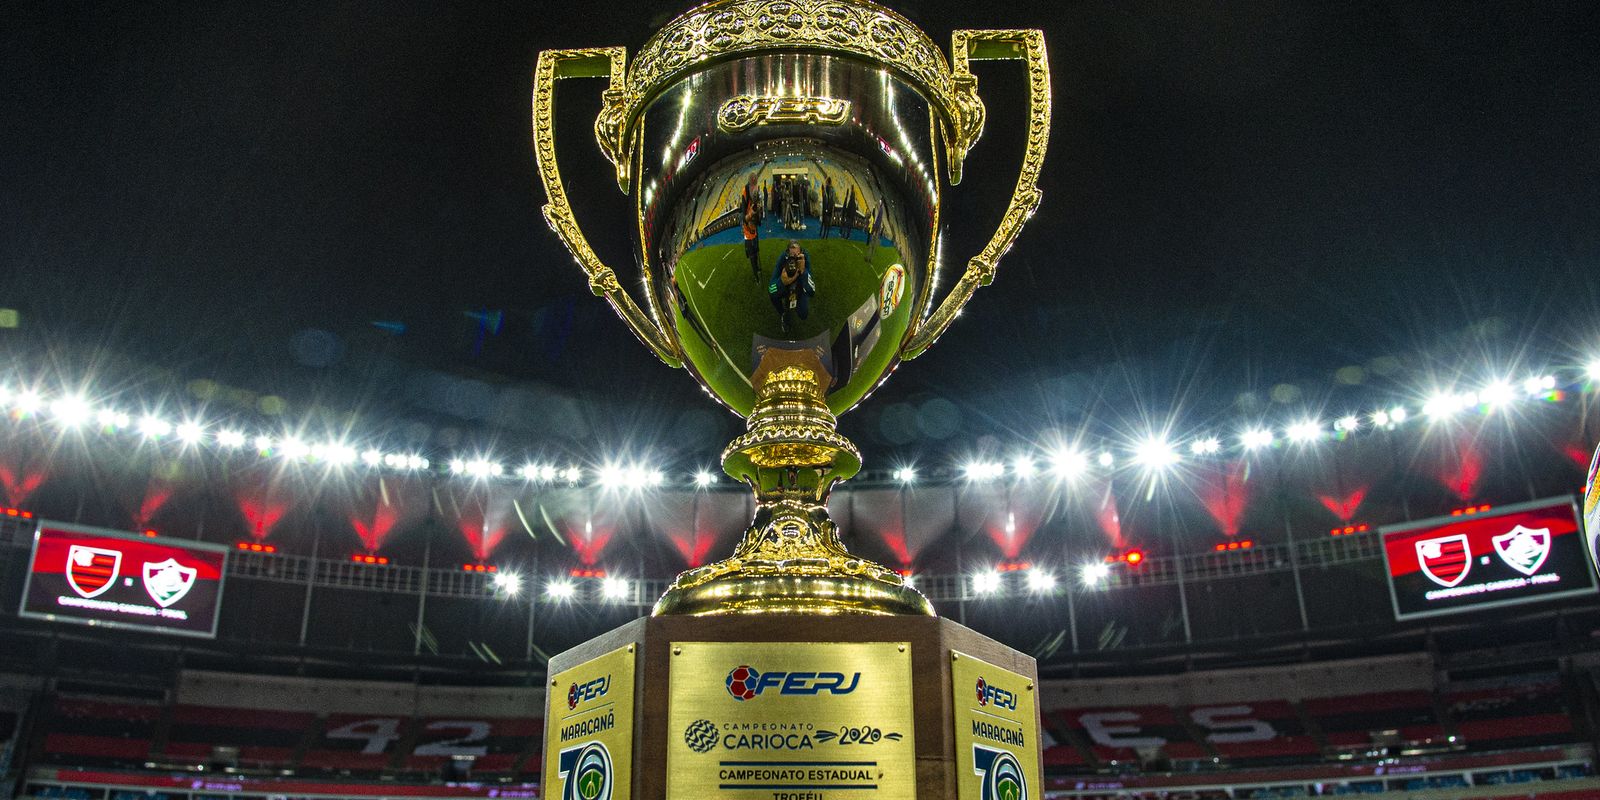 Fla x Flu decide campeão carioca neste sábado no Maracanã